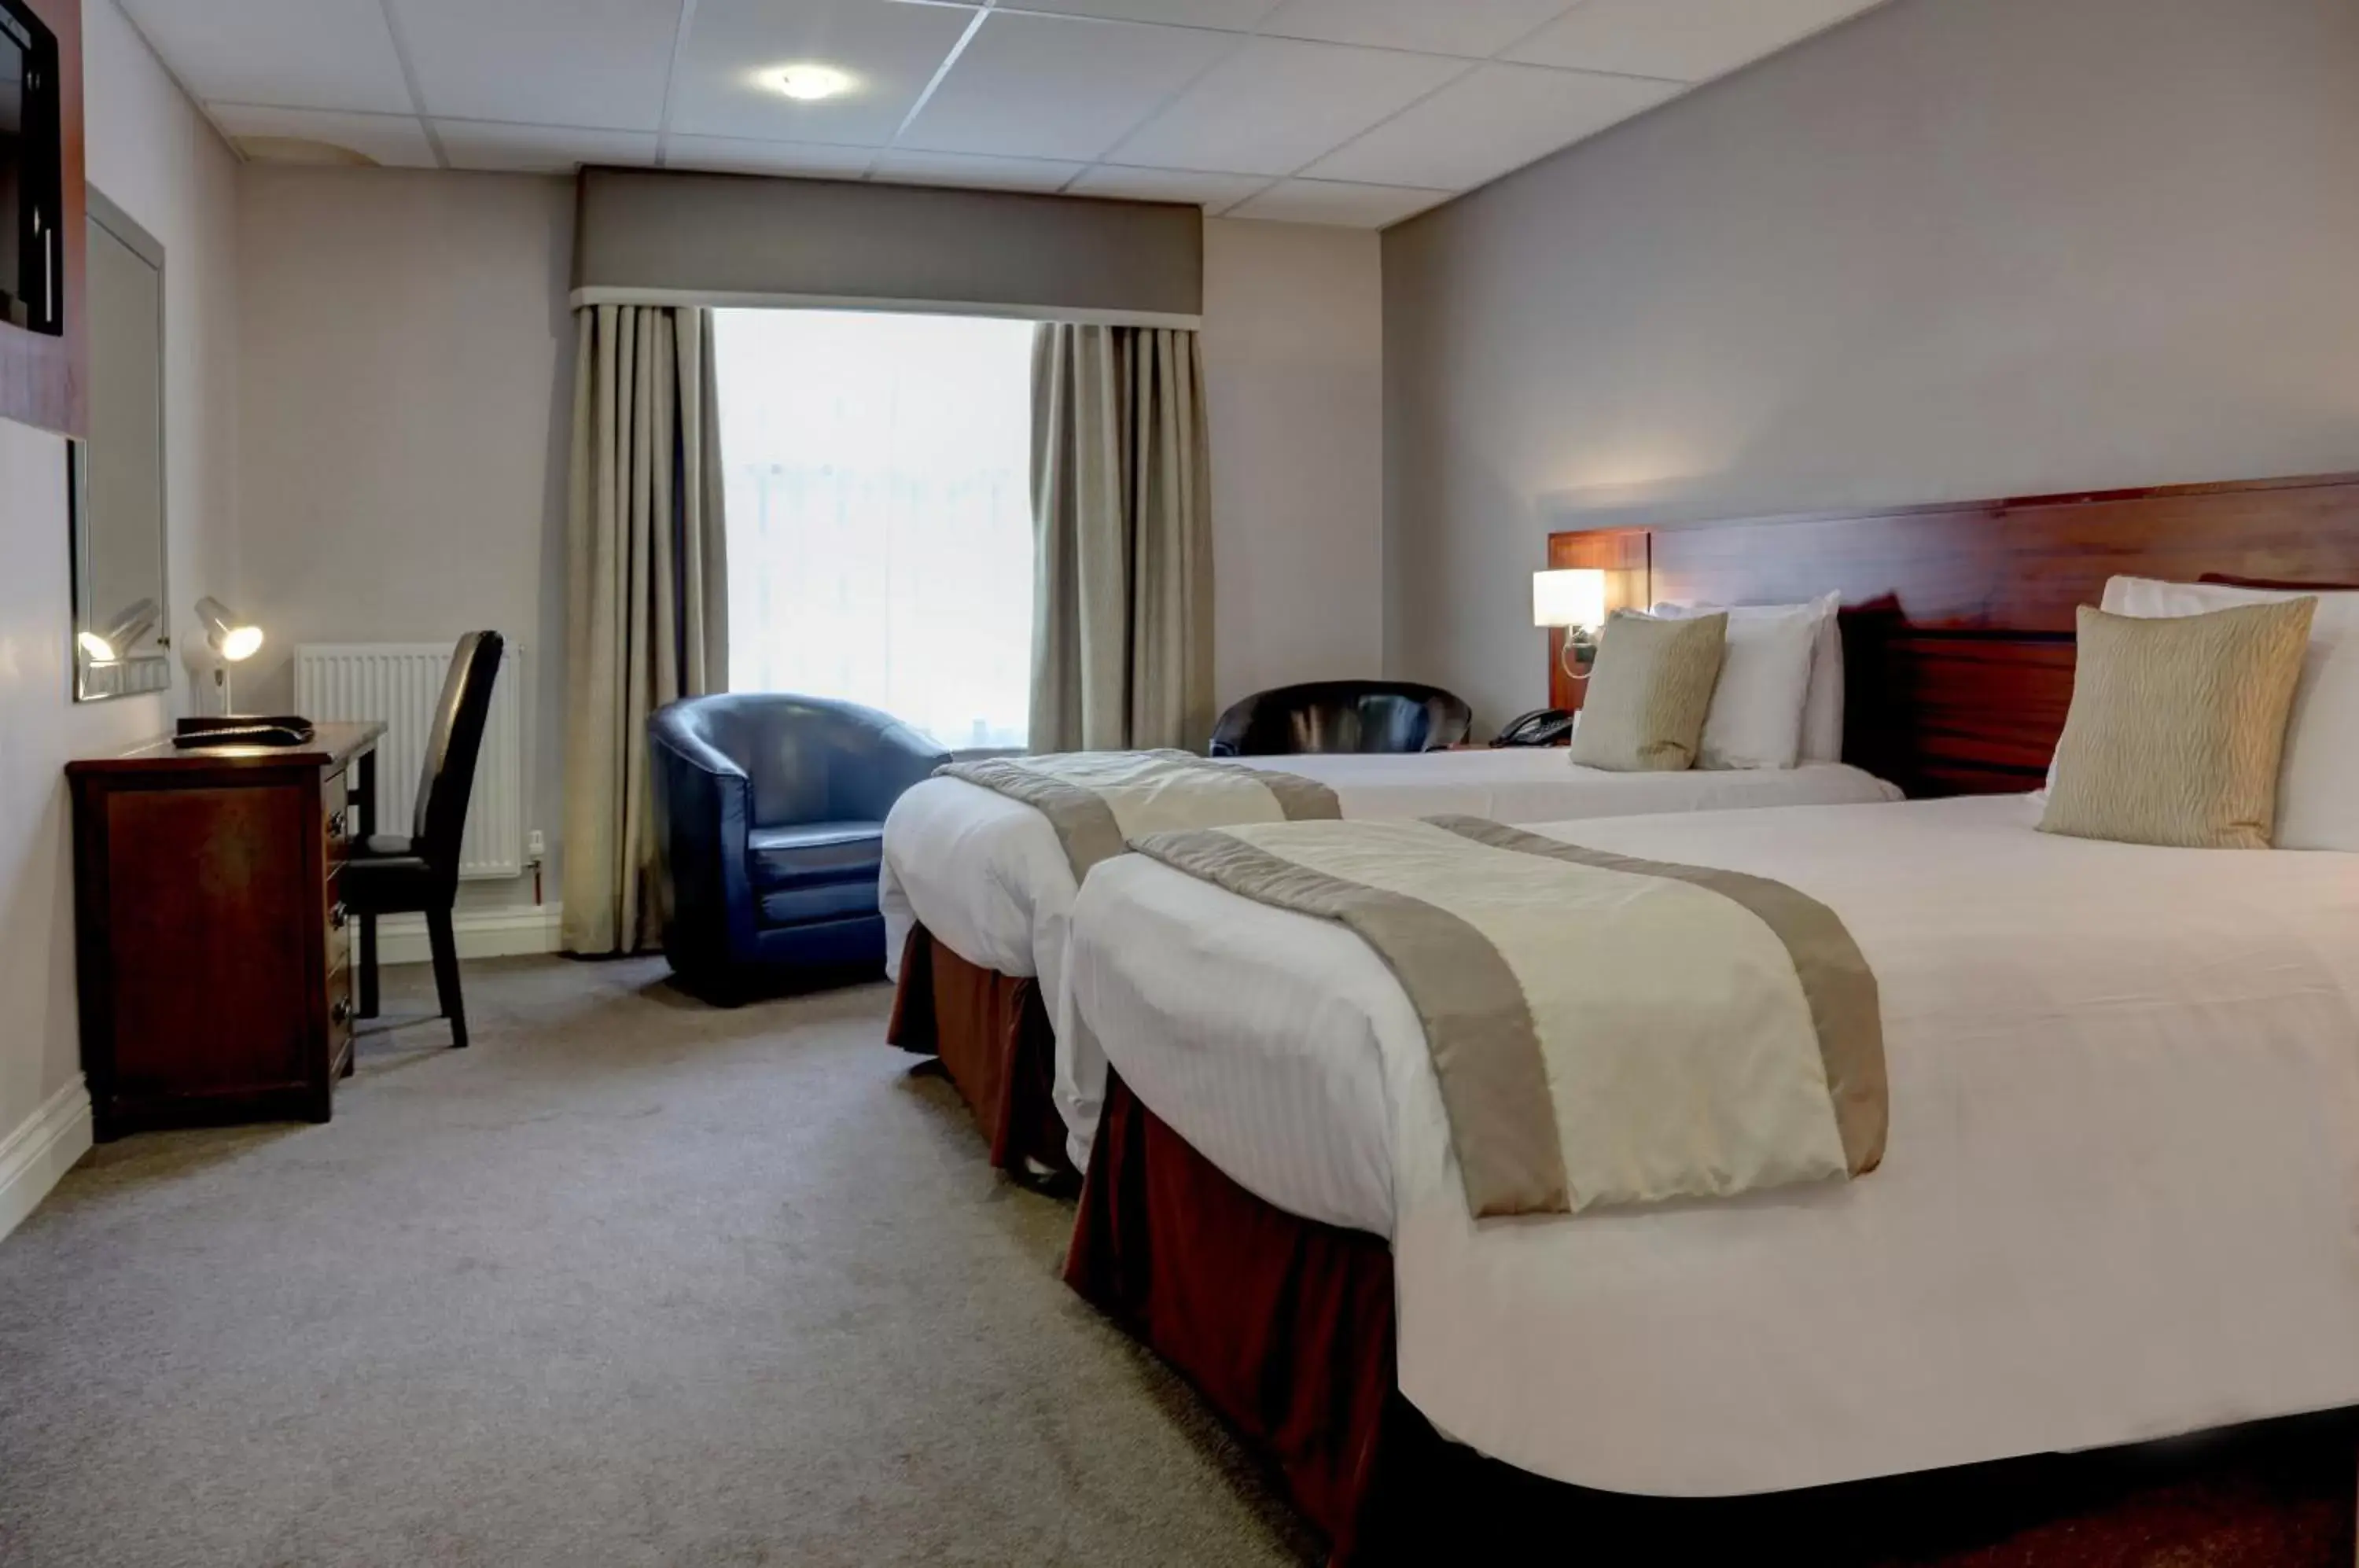 Bedroom, Room Photo in Best Western Plus West Retford Hotel